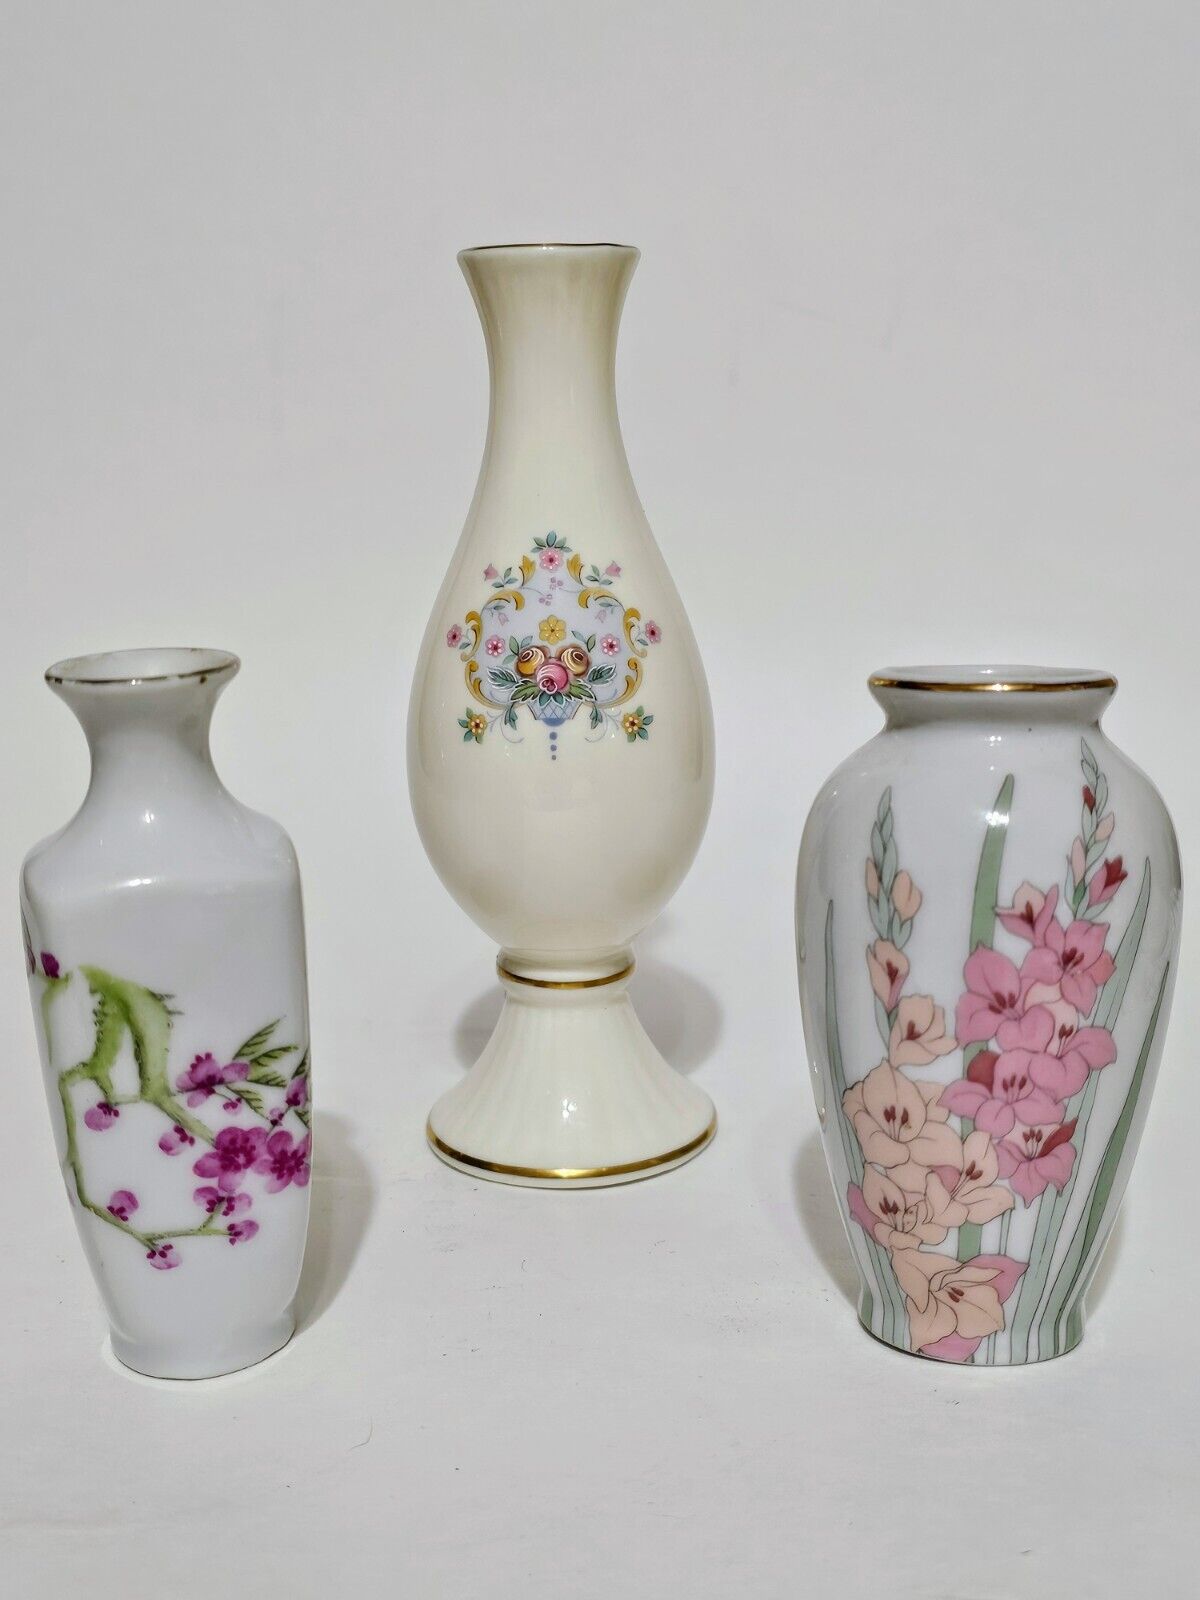 Lot of 3 Floral Bud Vases - Japan & England